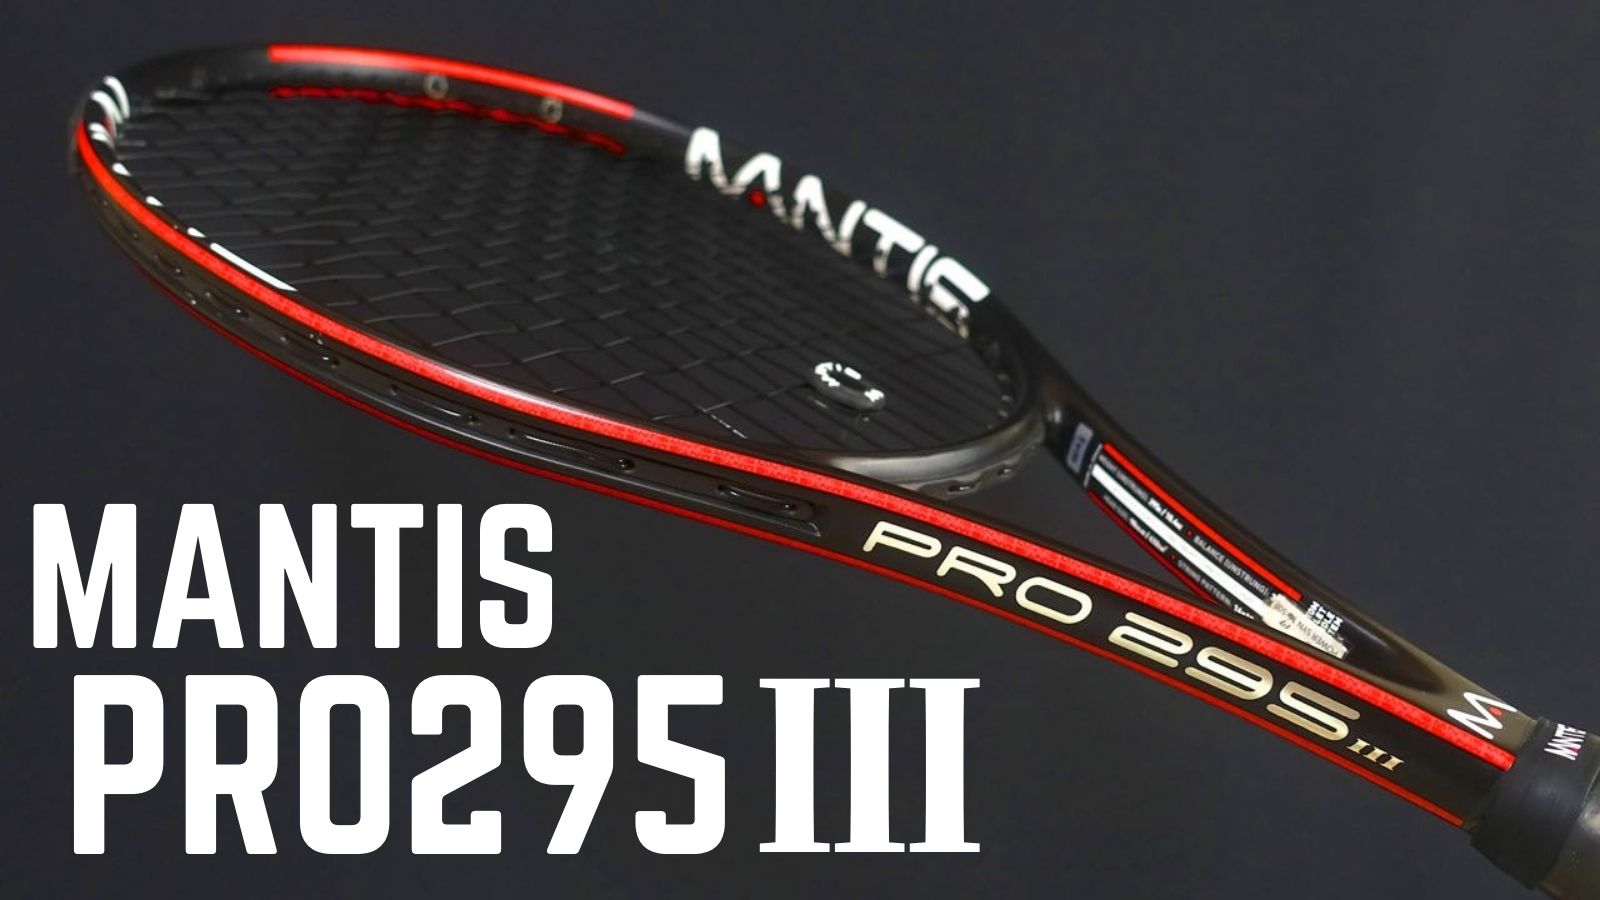 テニスラケット マンティス マンティス プロ 295 ll (G3)MANTIS MANTIS